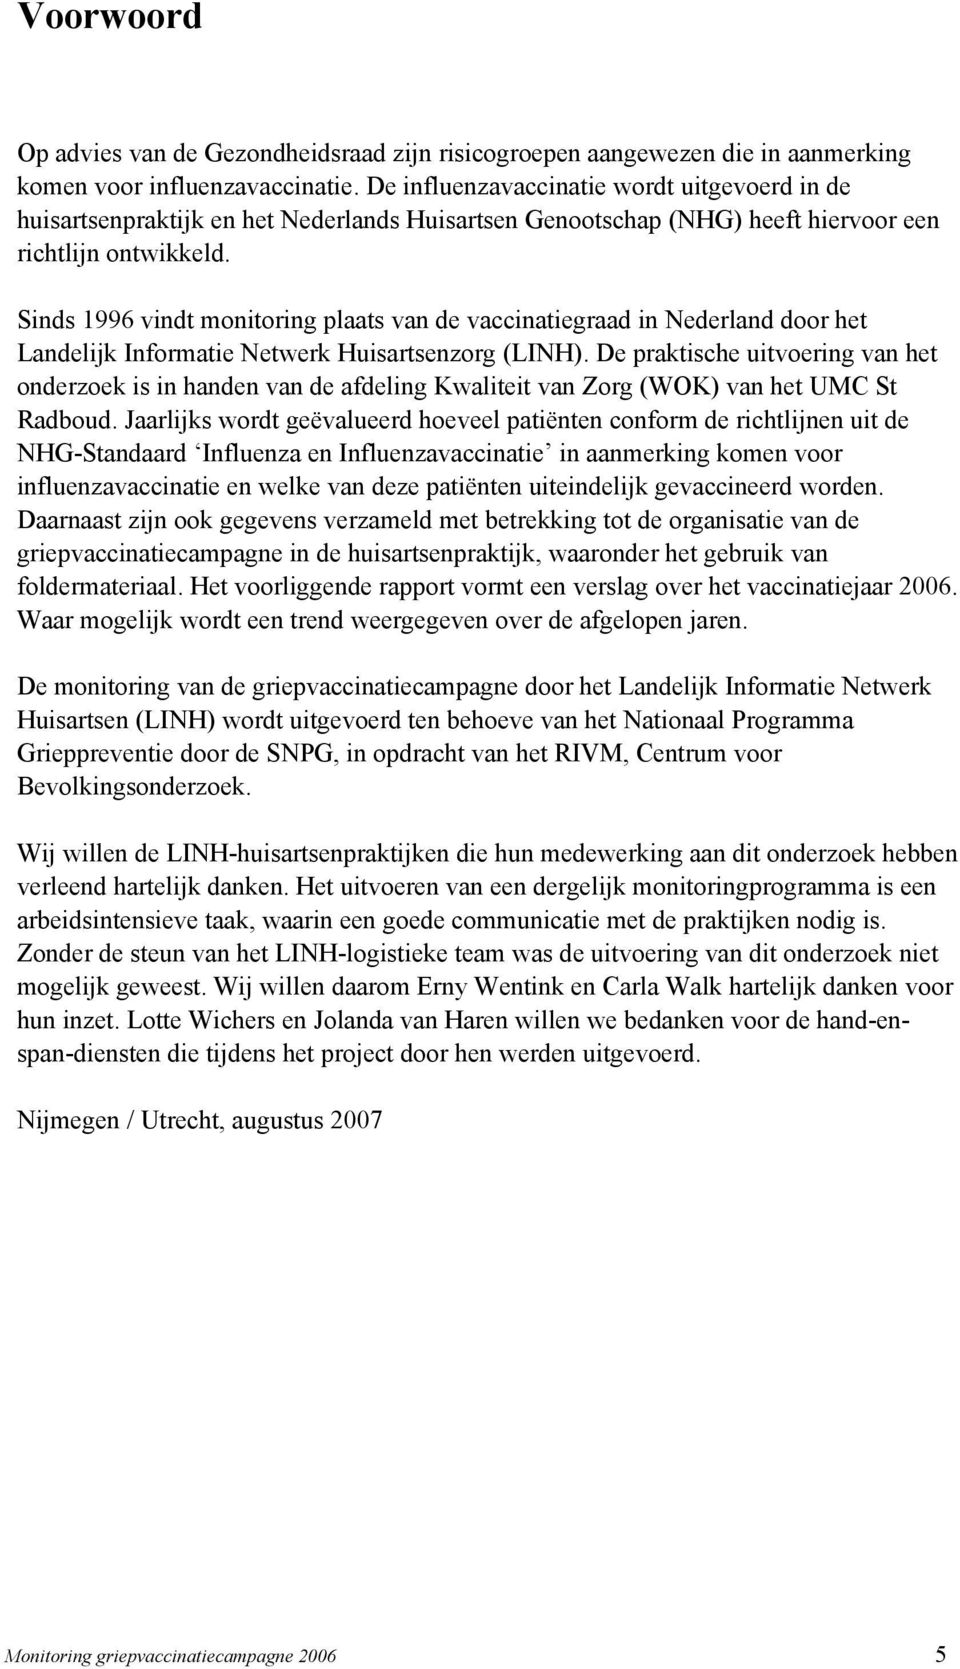 Sinds 1996 vindt monitoring plaats van de vaccinatiegraad in Nederland door het Landelijk Informatie Netwerk Huisartsenzorg (LINH).